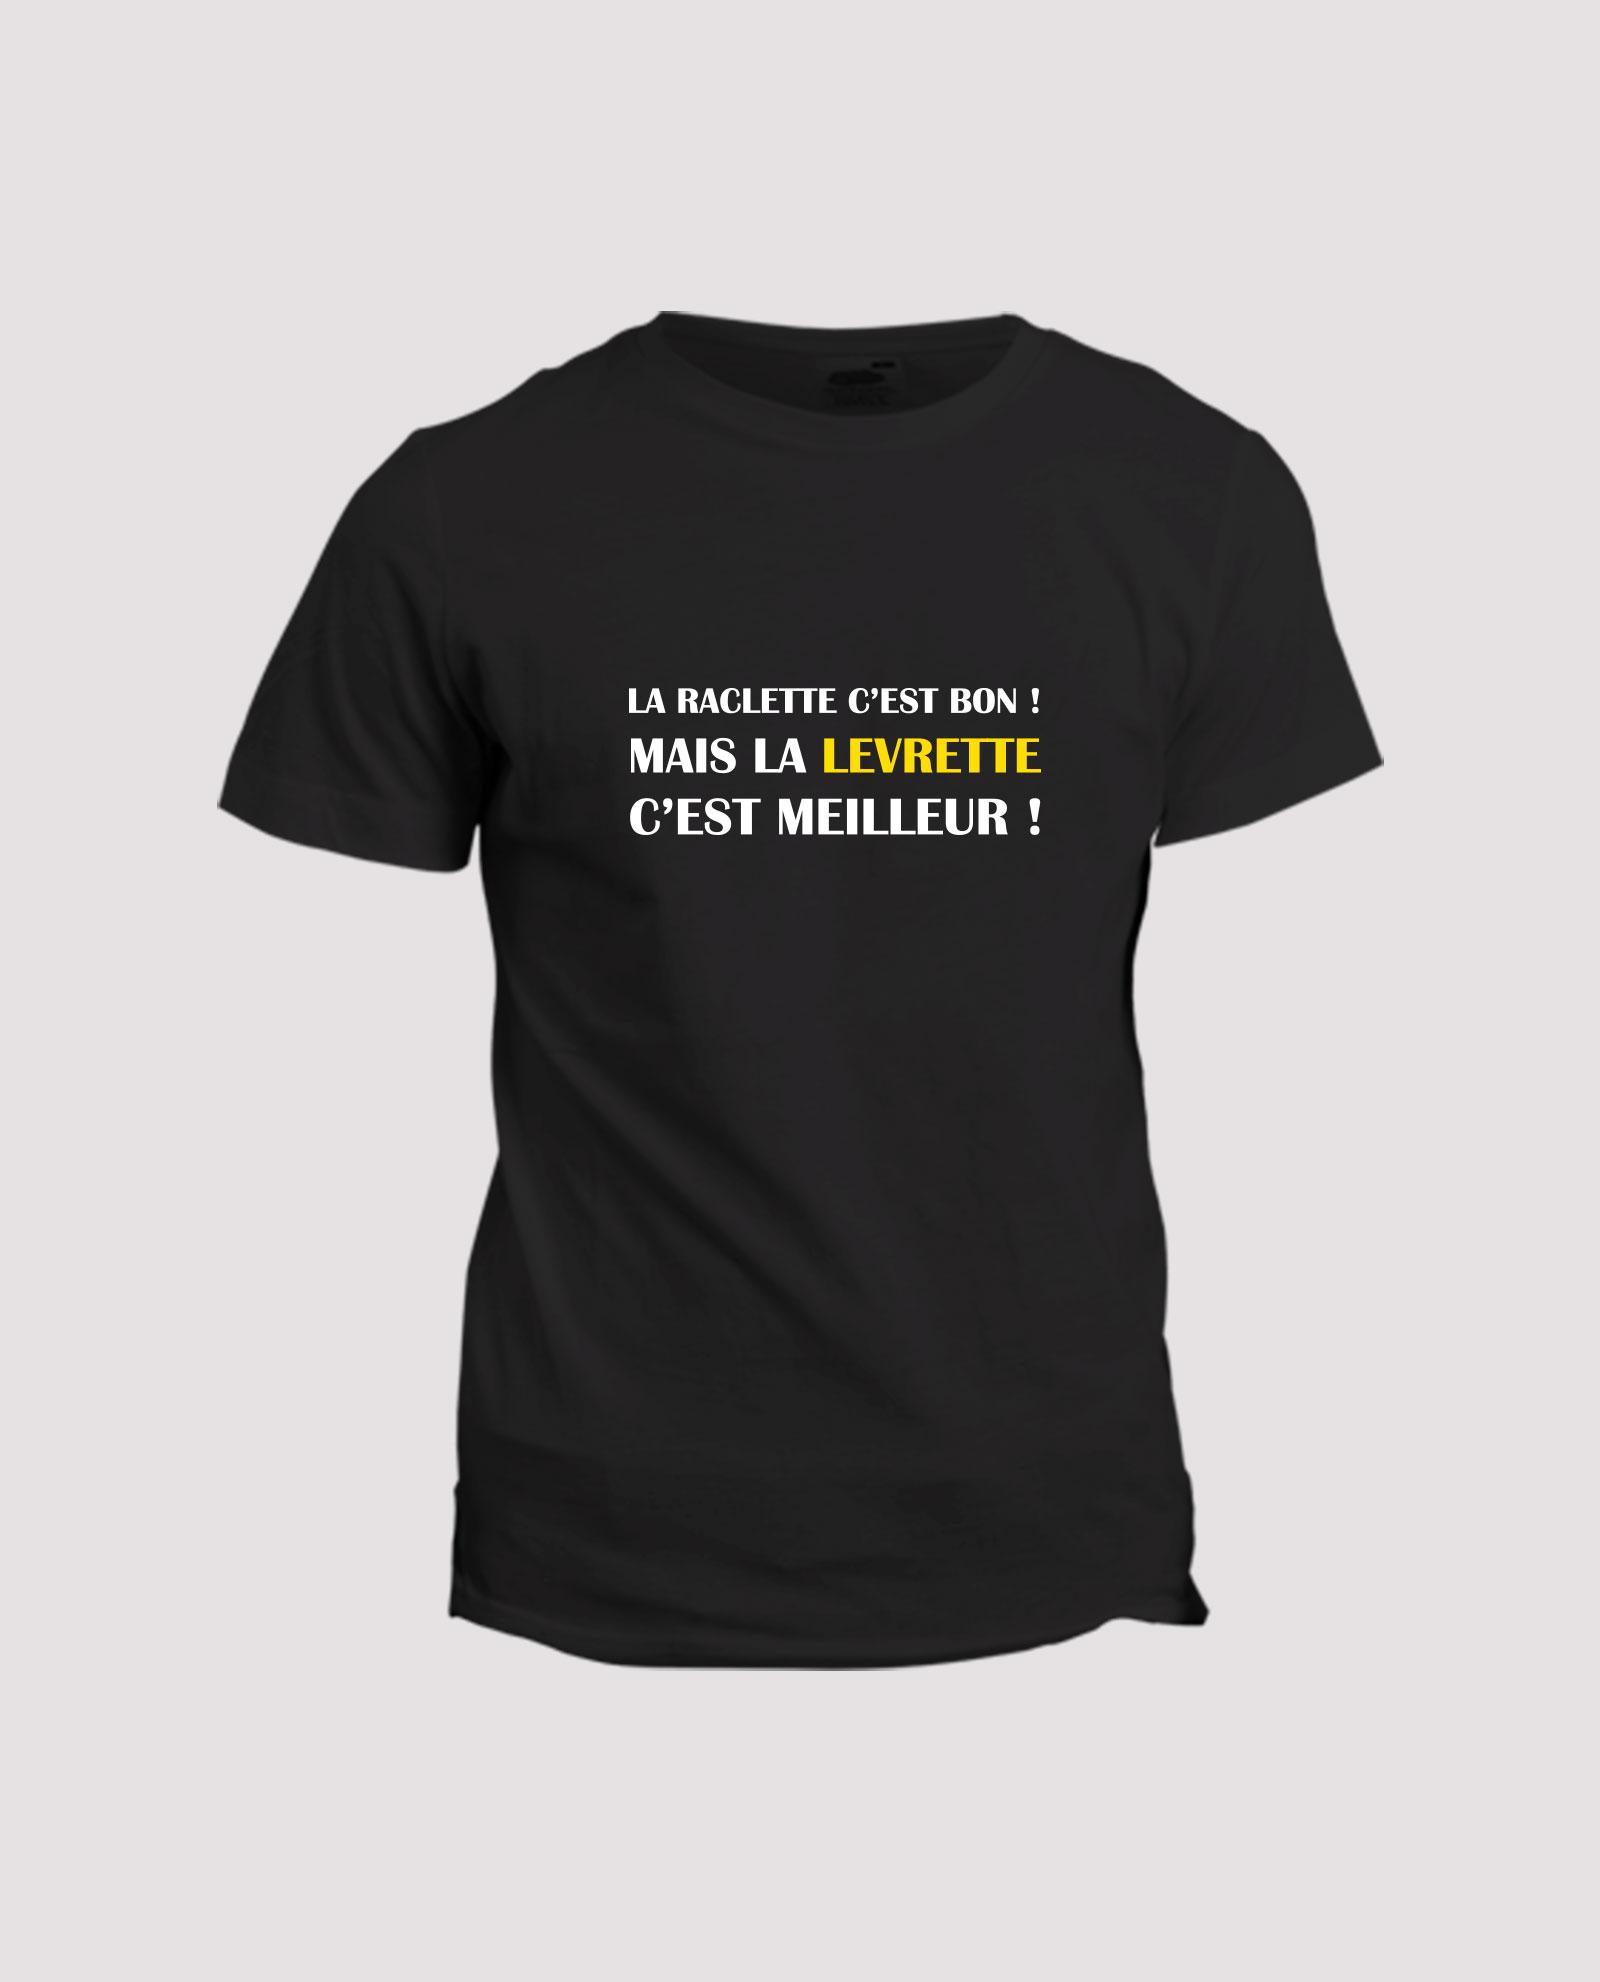 la-ligne-shop-t-shirt-noir-humour-la-raclette-c-est-bon-mais-la-levrette-c-est-meilleur